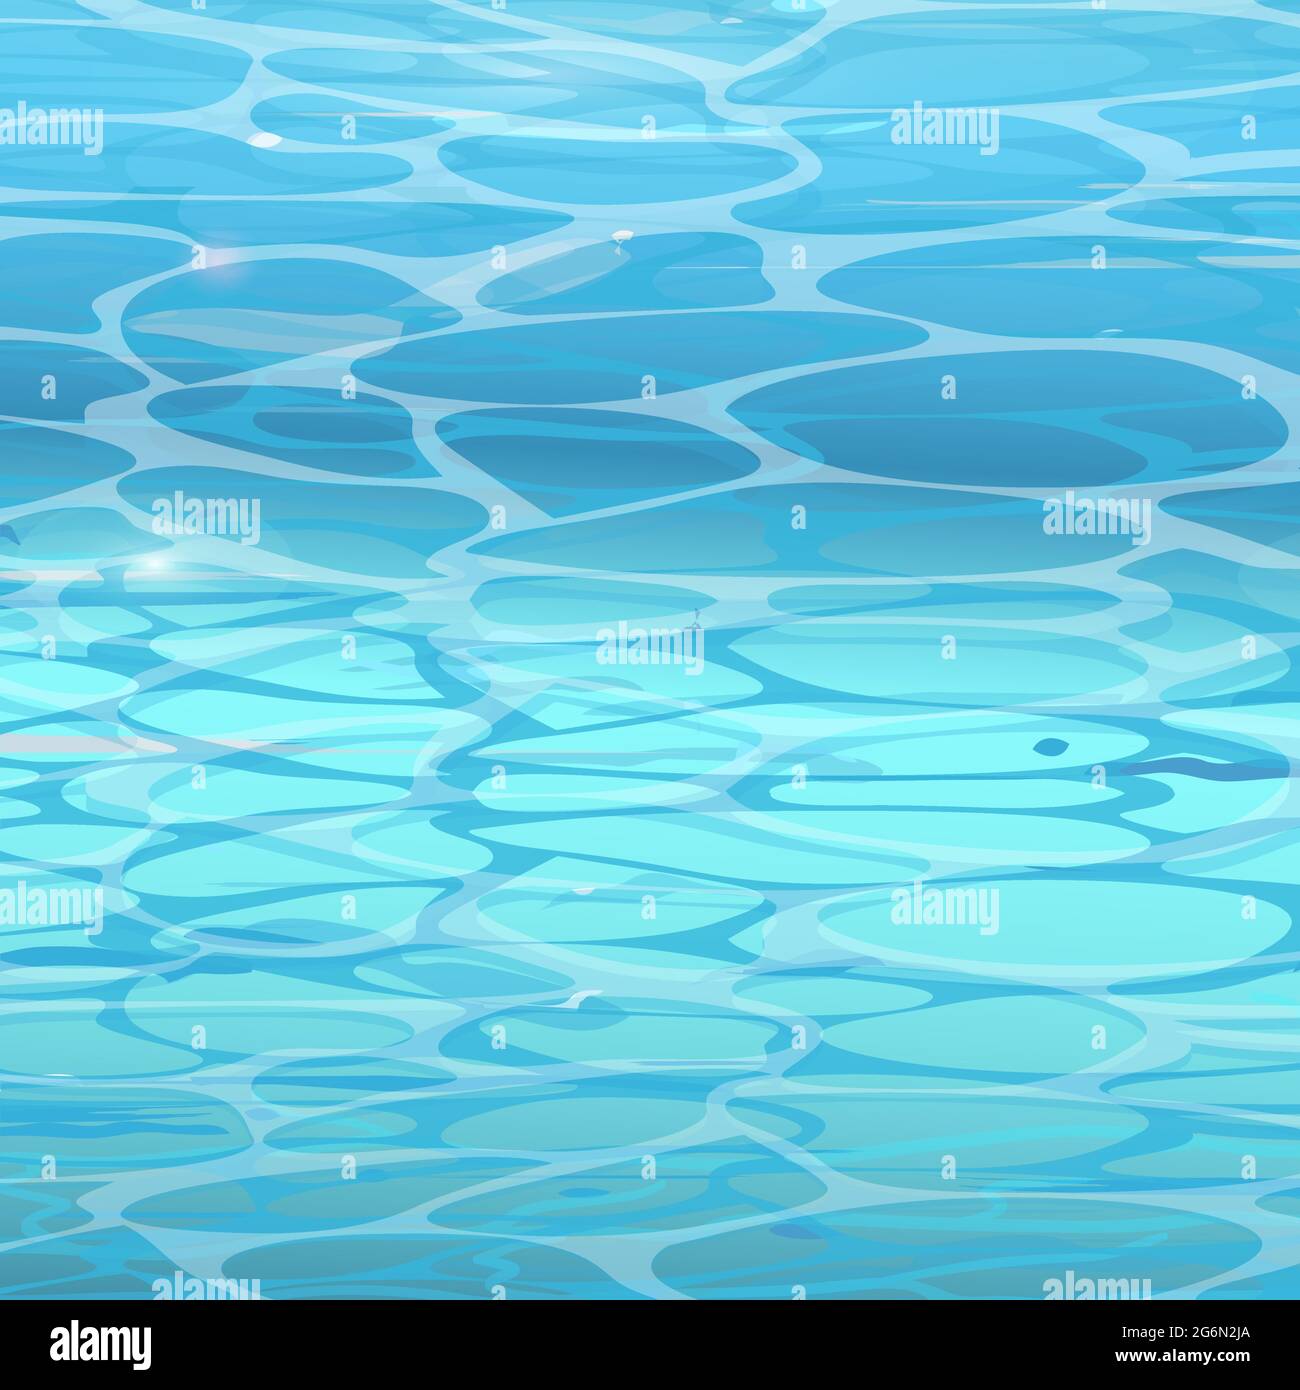 Hintergrund der Wasseroberfläche im Pool. Vektor-Illustration von blauem sauberem Wasser in flachem Stil. Stock Vektor